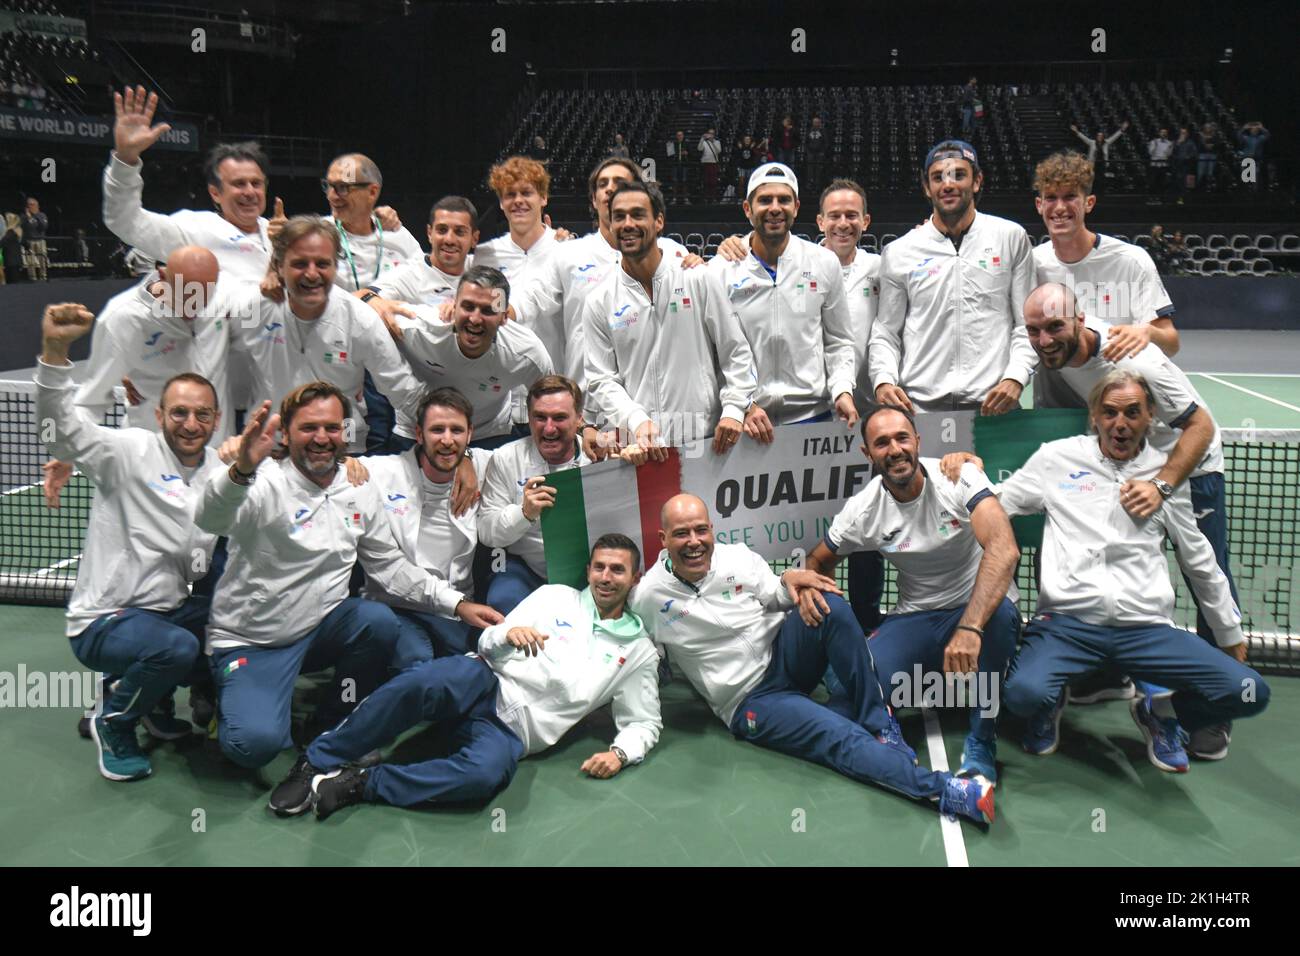 El equipo nacional italiano de tenis celebra la clasificación a la final de la Copa Davis Foto de stock